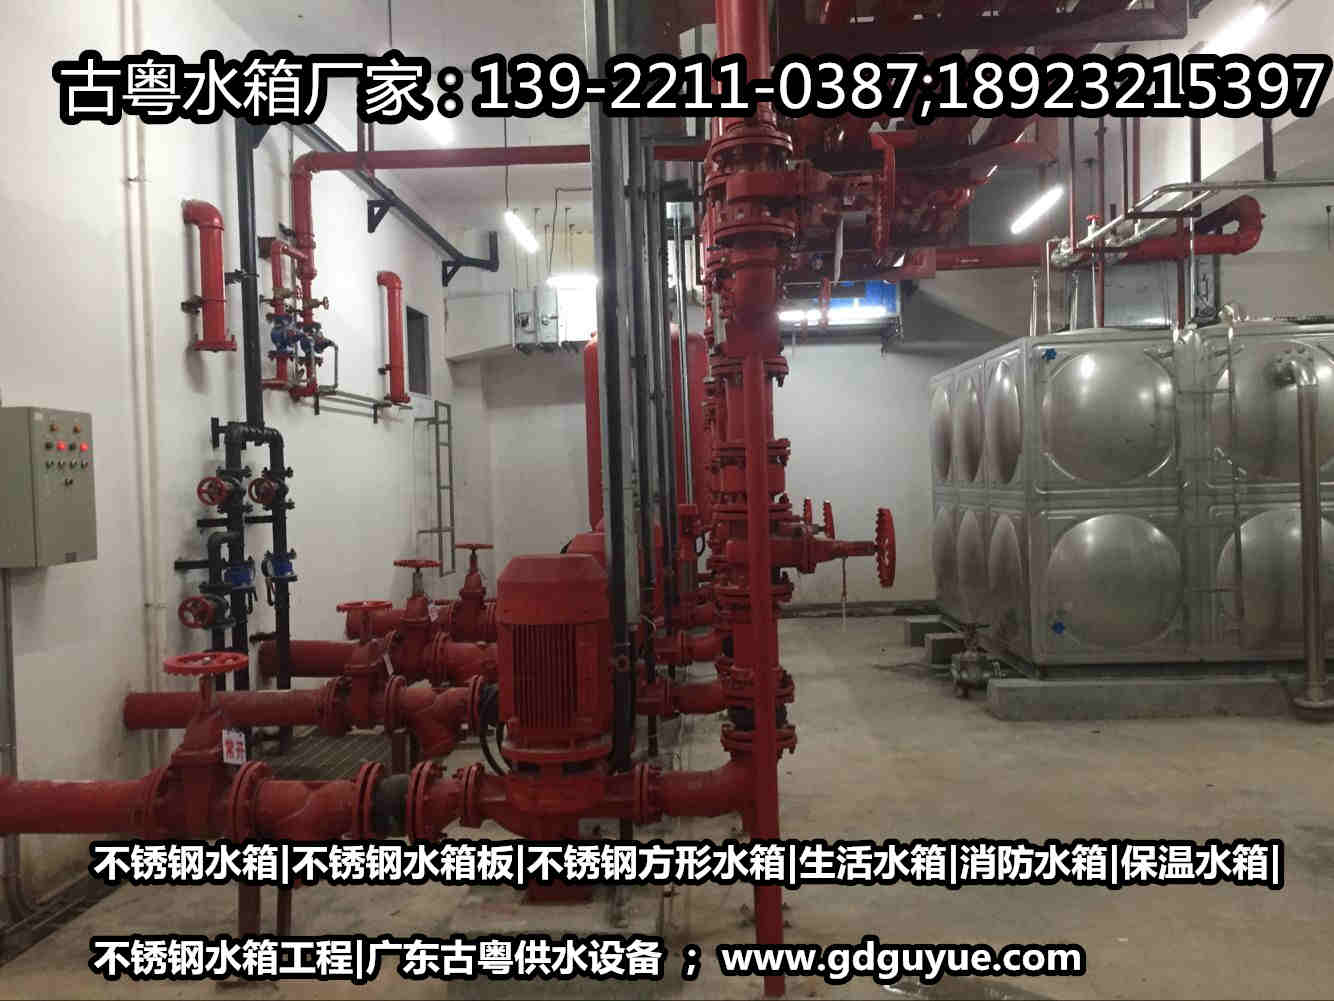 惠州不锈钢水箱厂家|不锈钢消防水箱|惠州不锈钢生活水箱|水箱工程